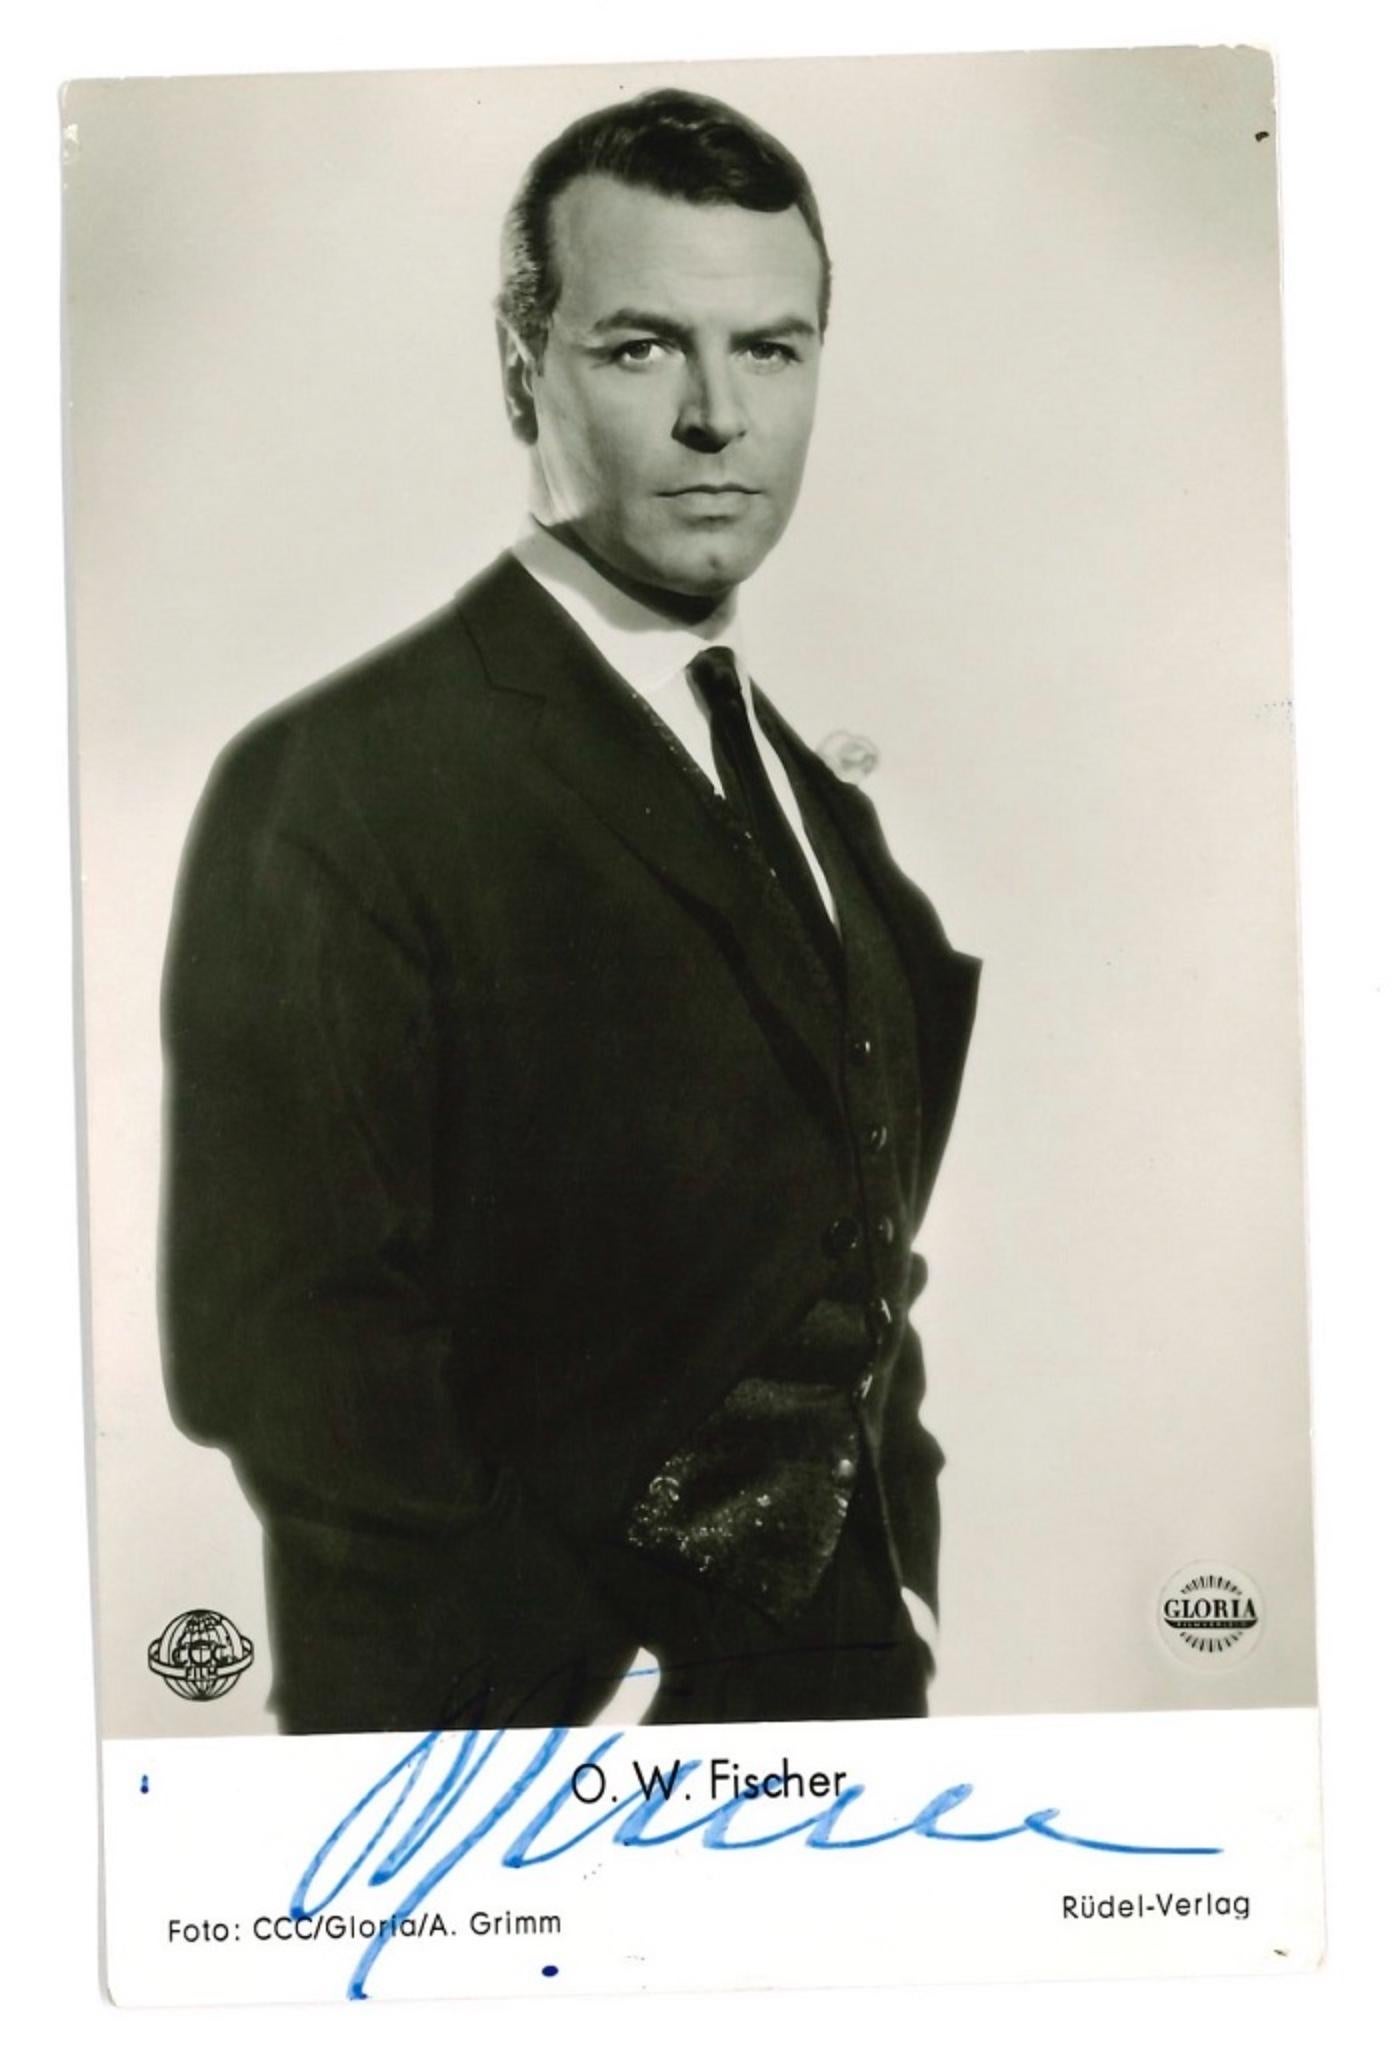 Portrait Photograph Unknown - Portrait autographié d'O. W. Fischer - Affiche vintage b/w, années 1950